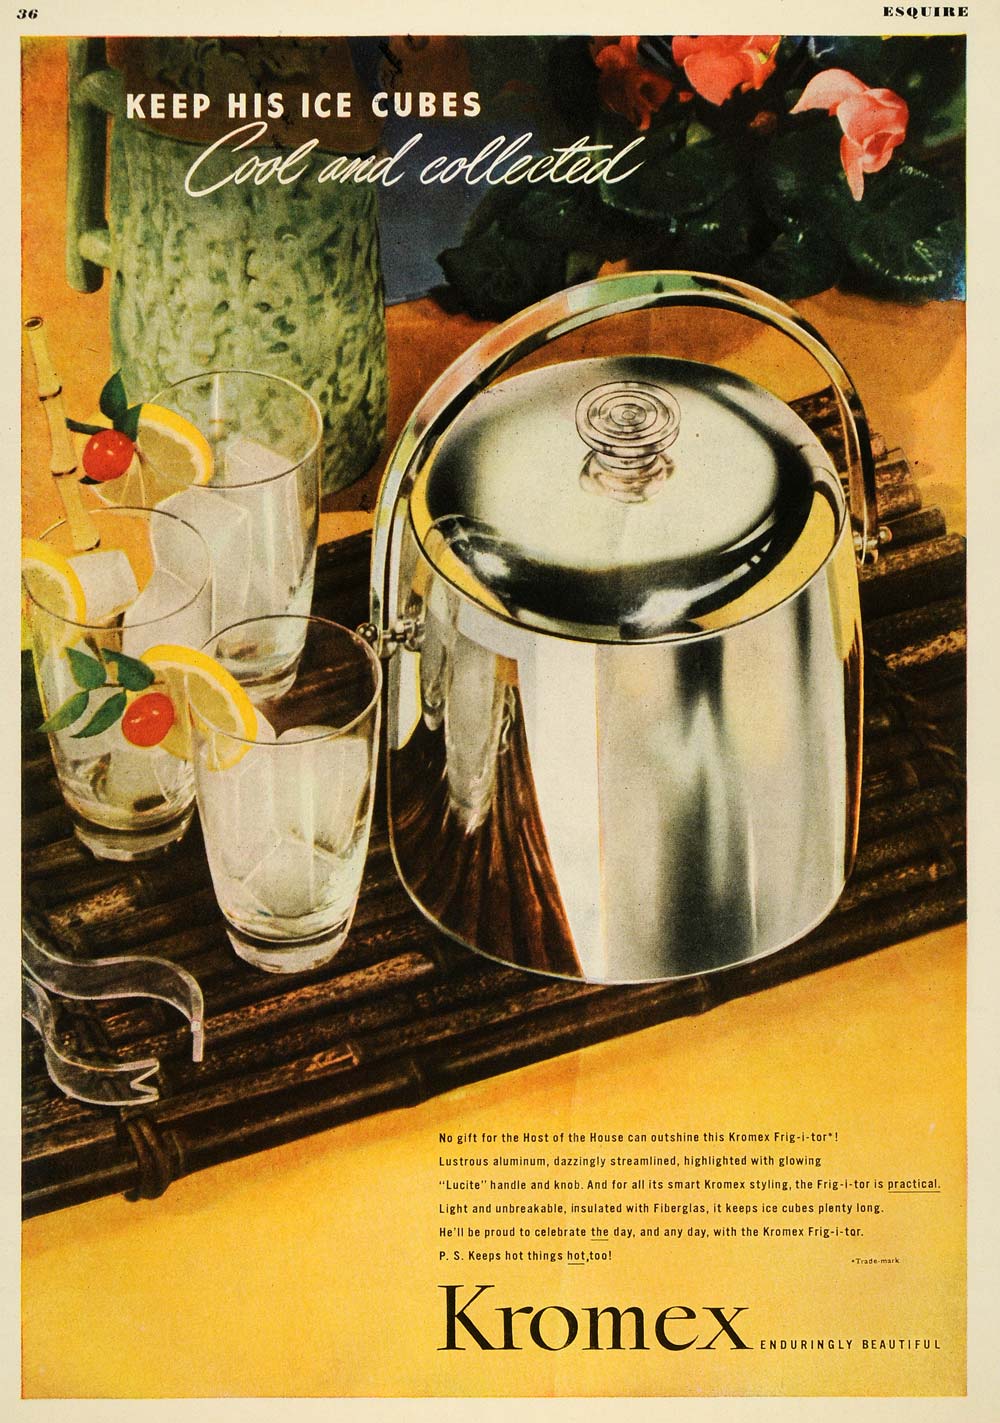 1947 Ad Kromex Ice Cocktails Bar Fiberglass Frig-i-tor - ORIGINAL ESQ4